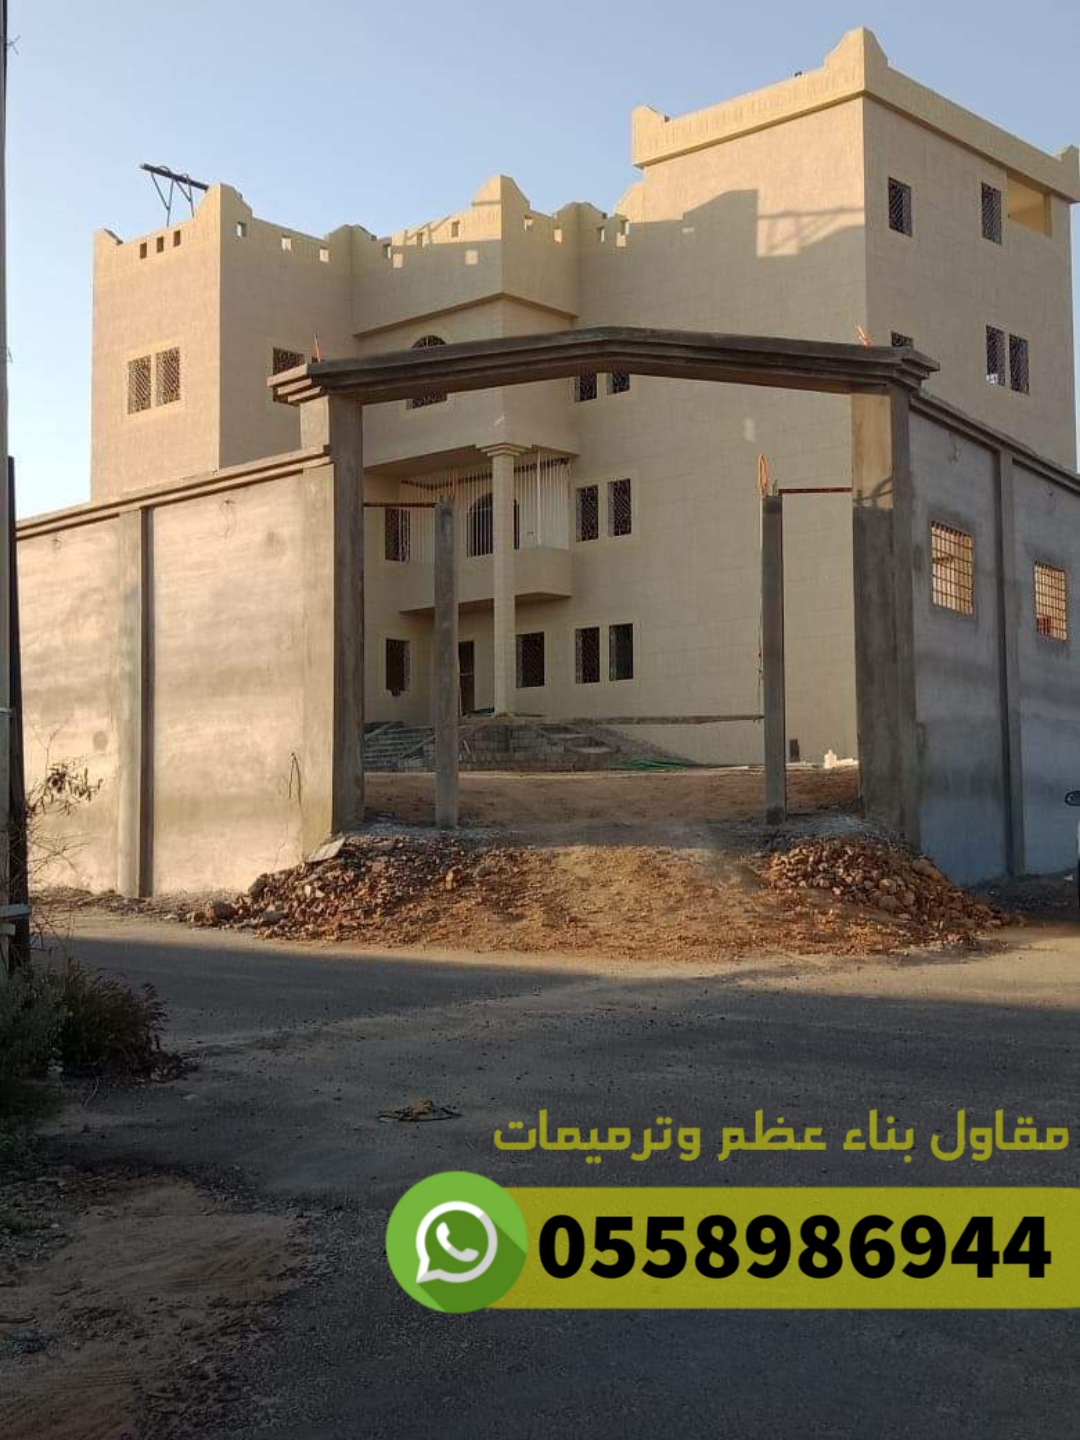 مقاول ترميم مباني في جدة, 0558986944  P_2518u1bhu5